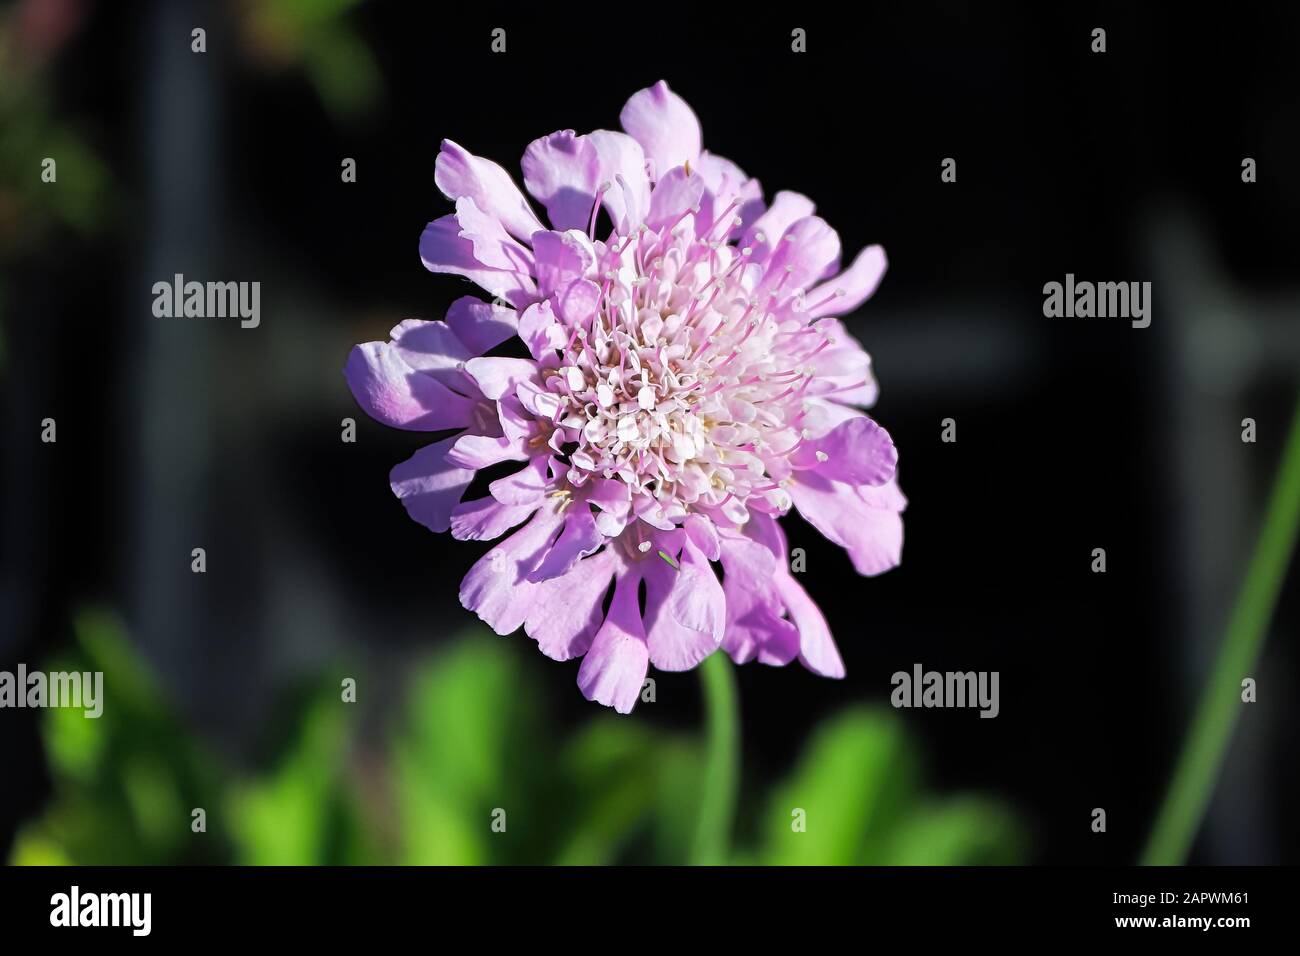 A pincushion flower head against a dark background Stock Photo